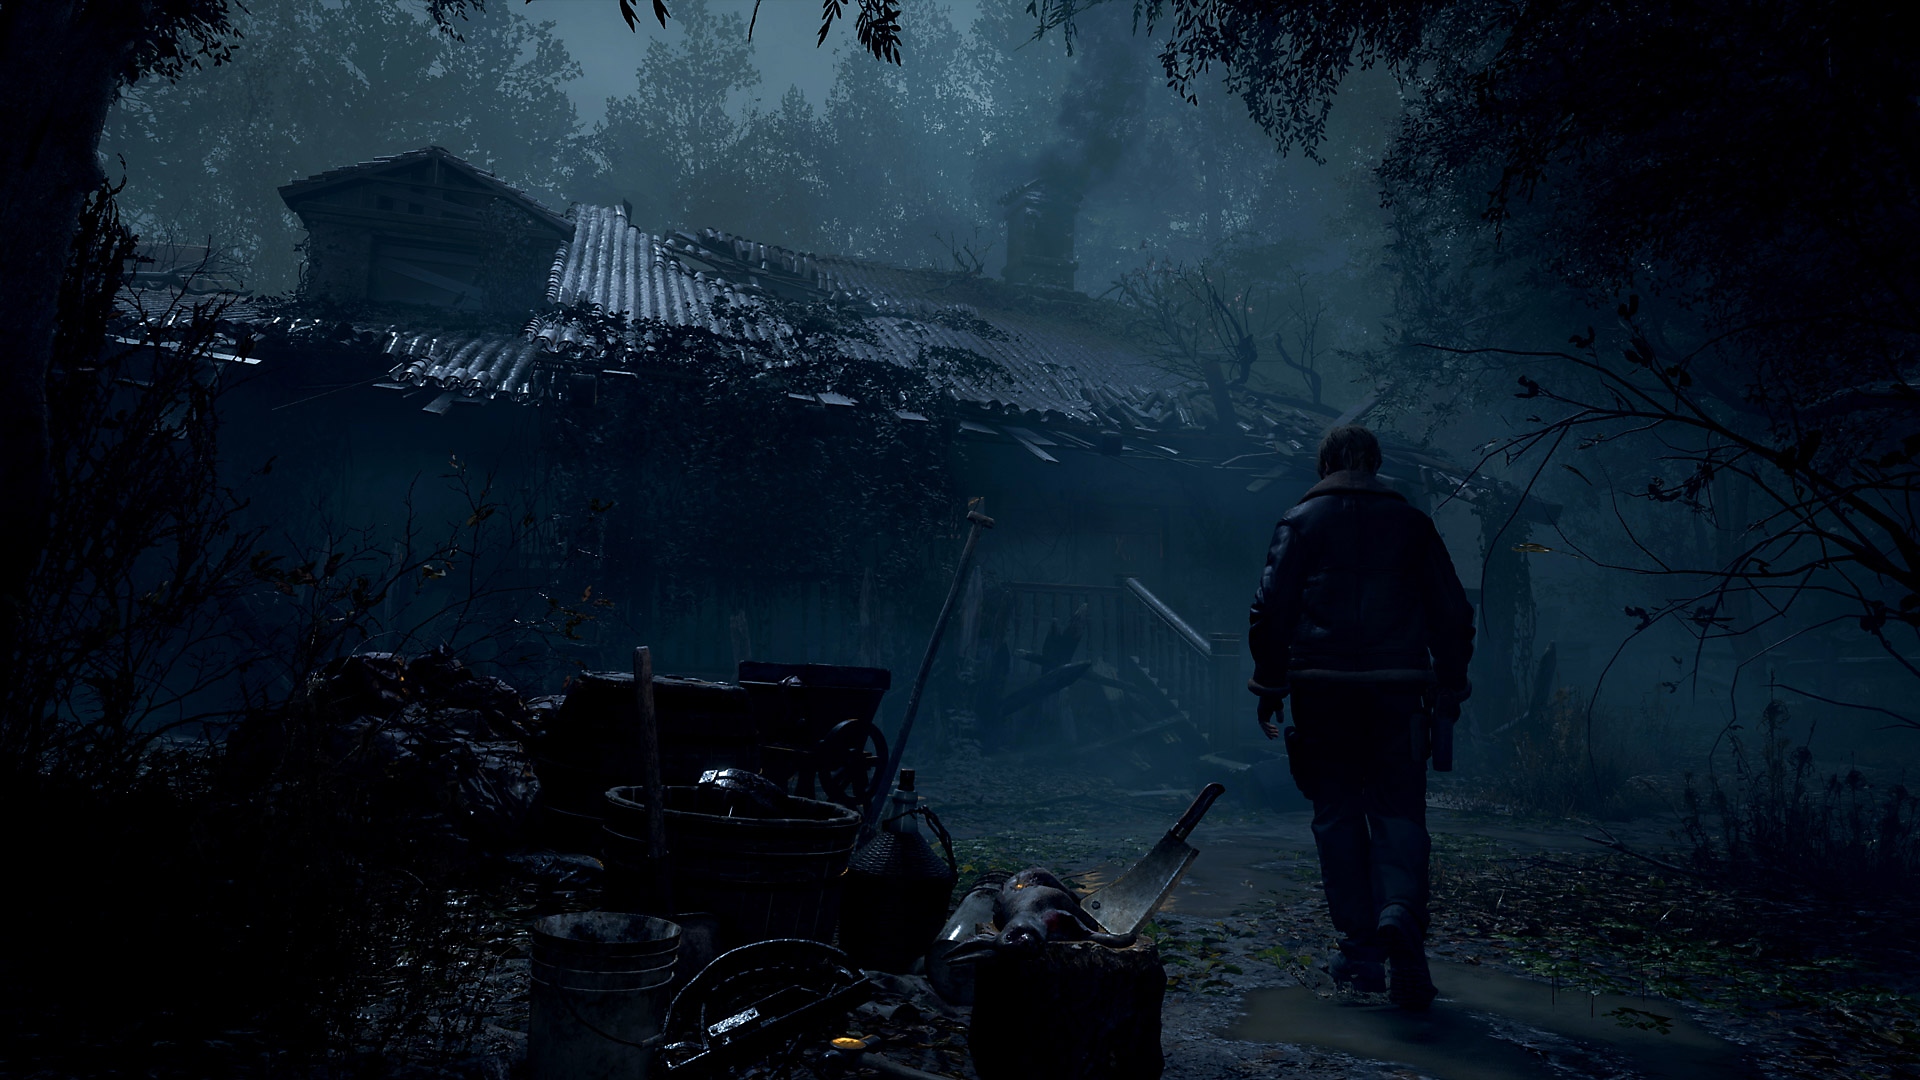 Resident Evil 4 – skjermbilde av Leon Kennedy som kommer til en falleferdig landsby.